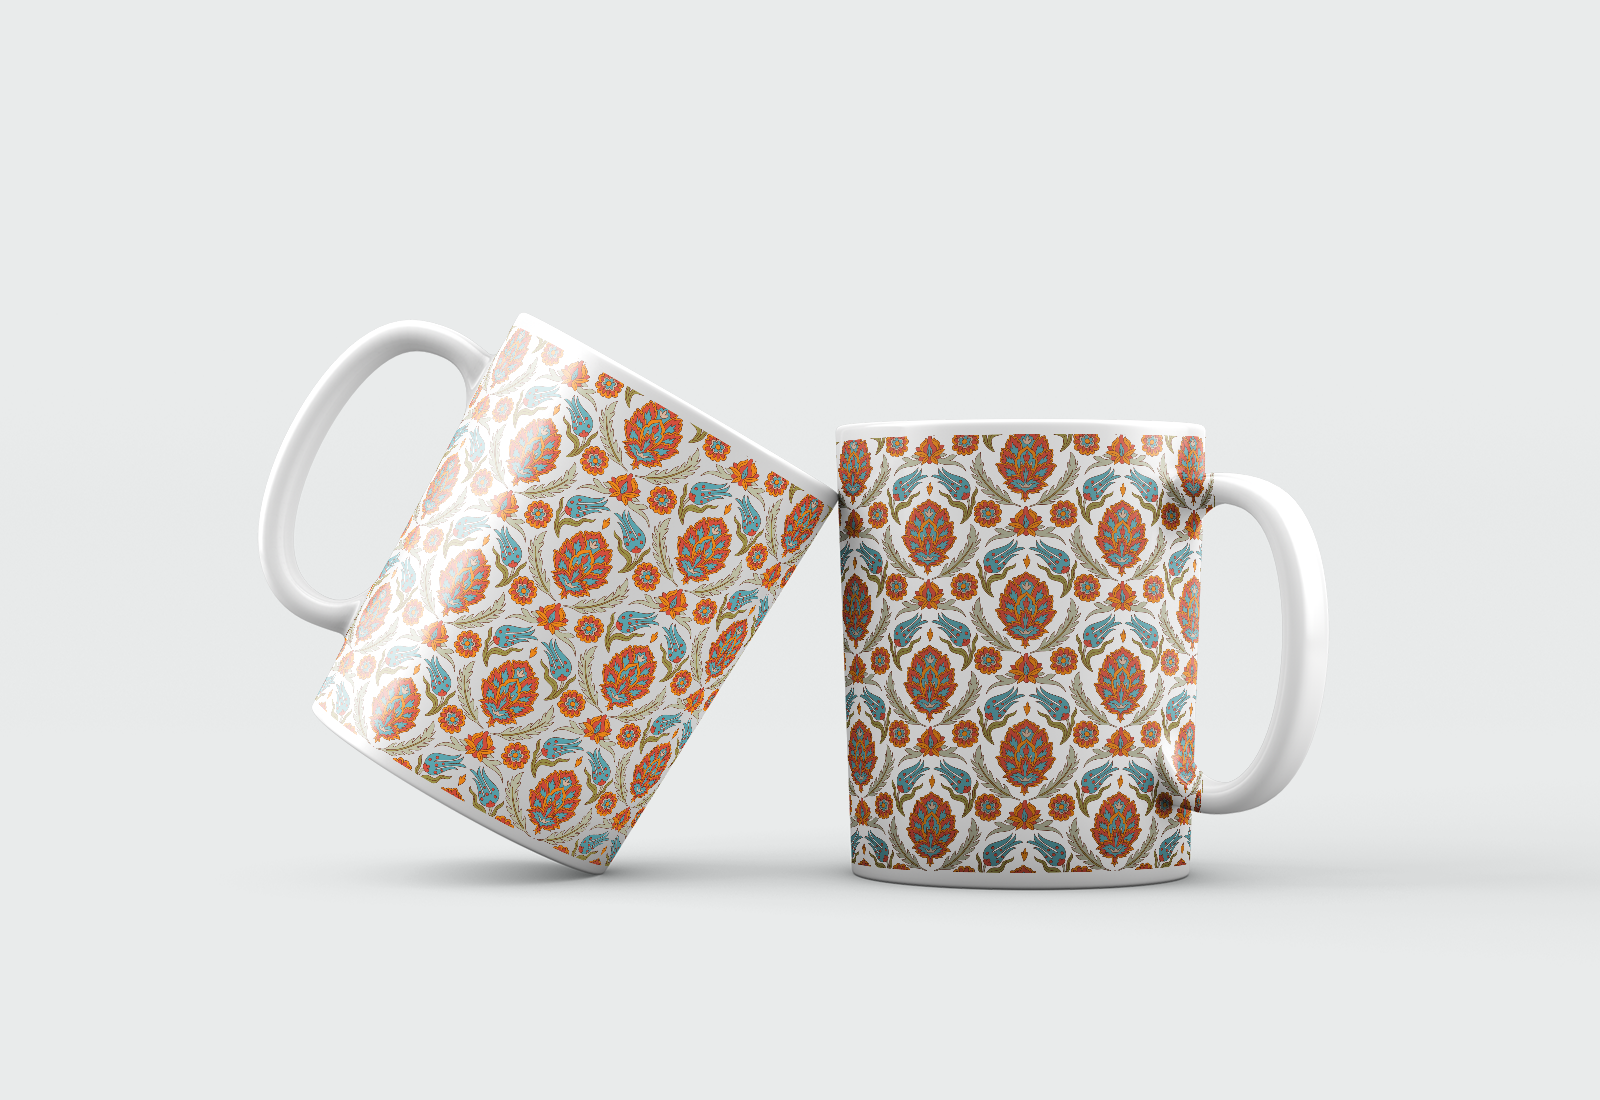 Persia style mugs